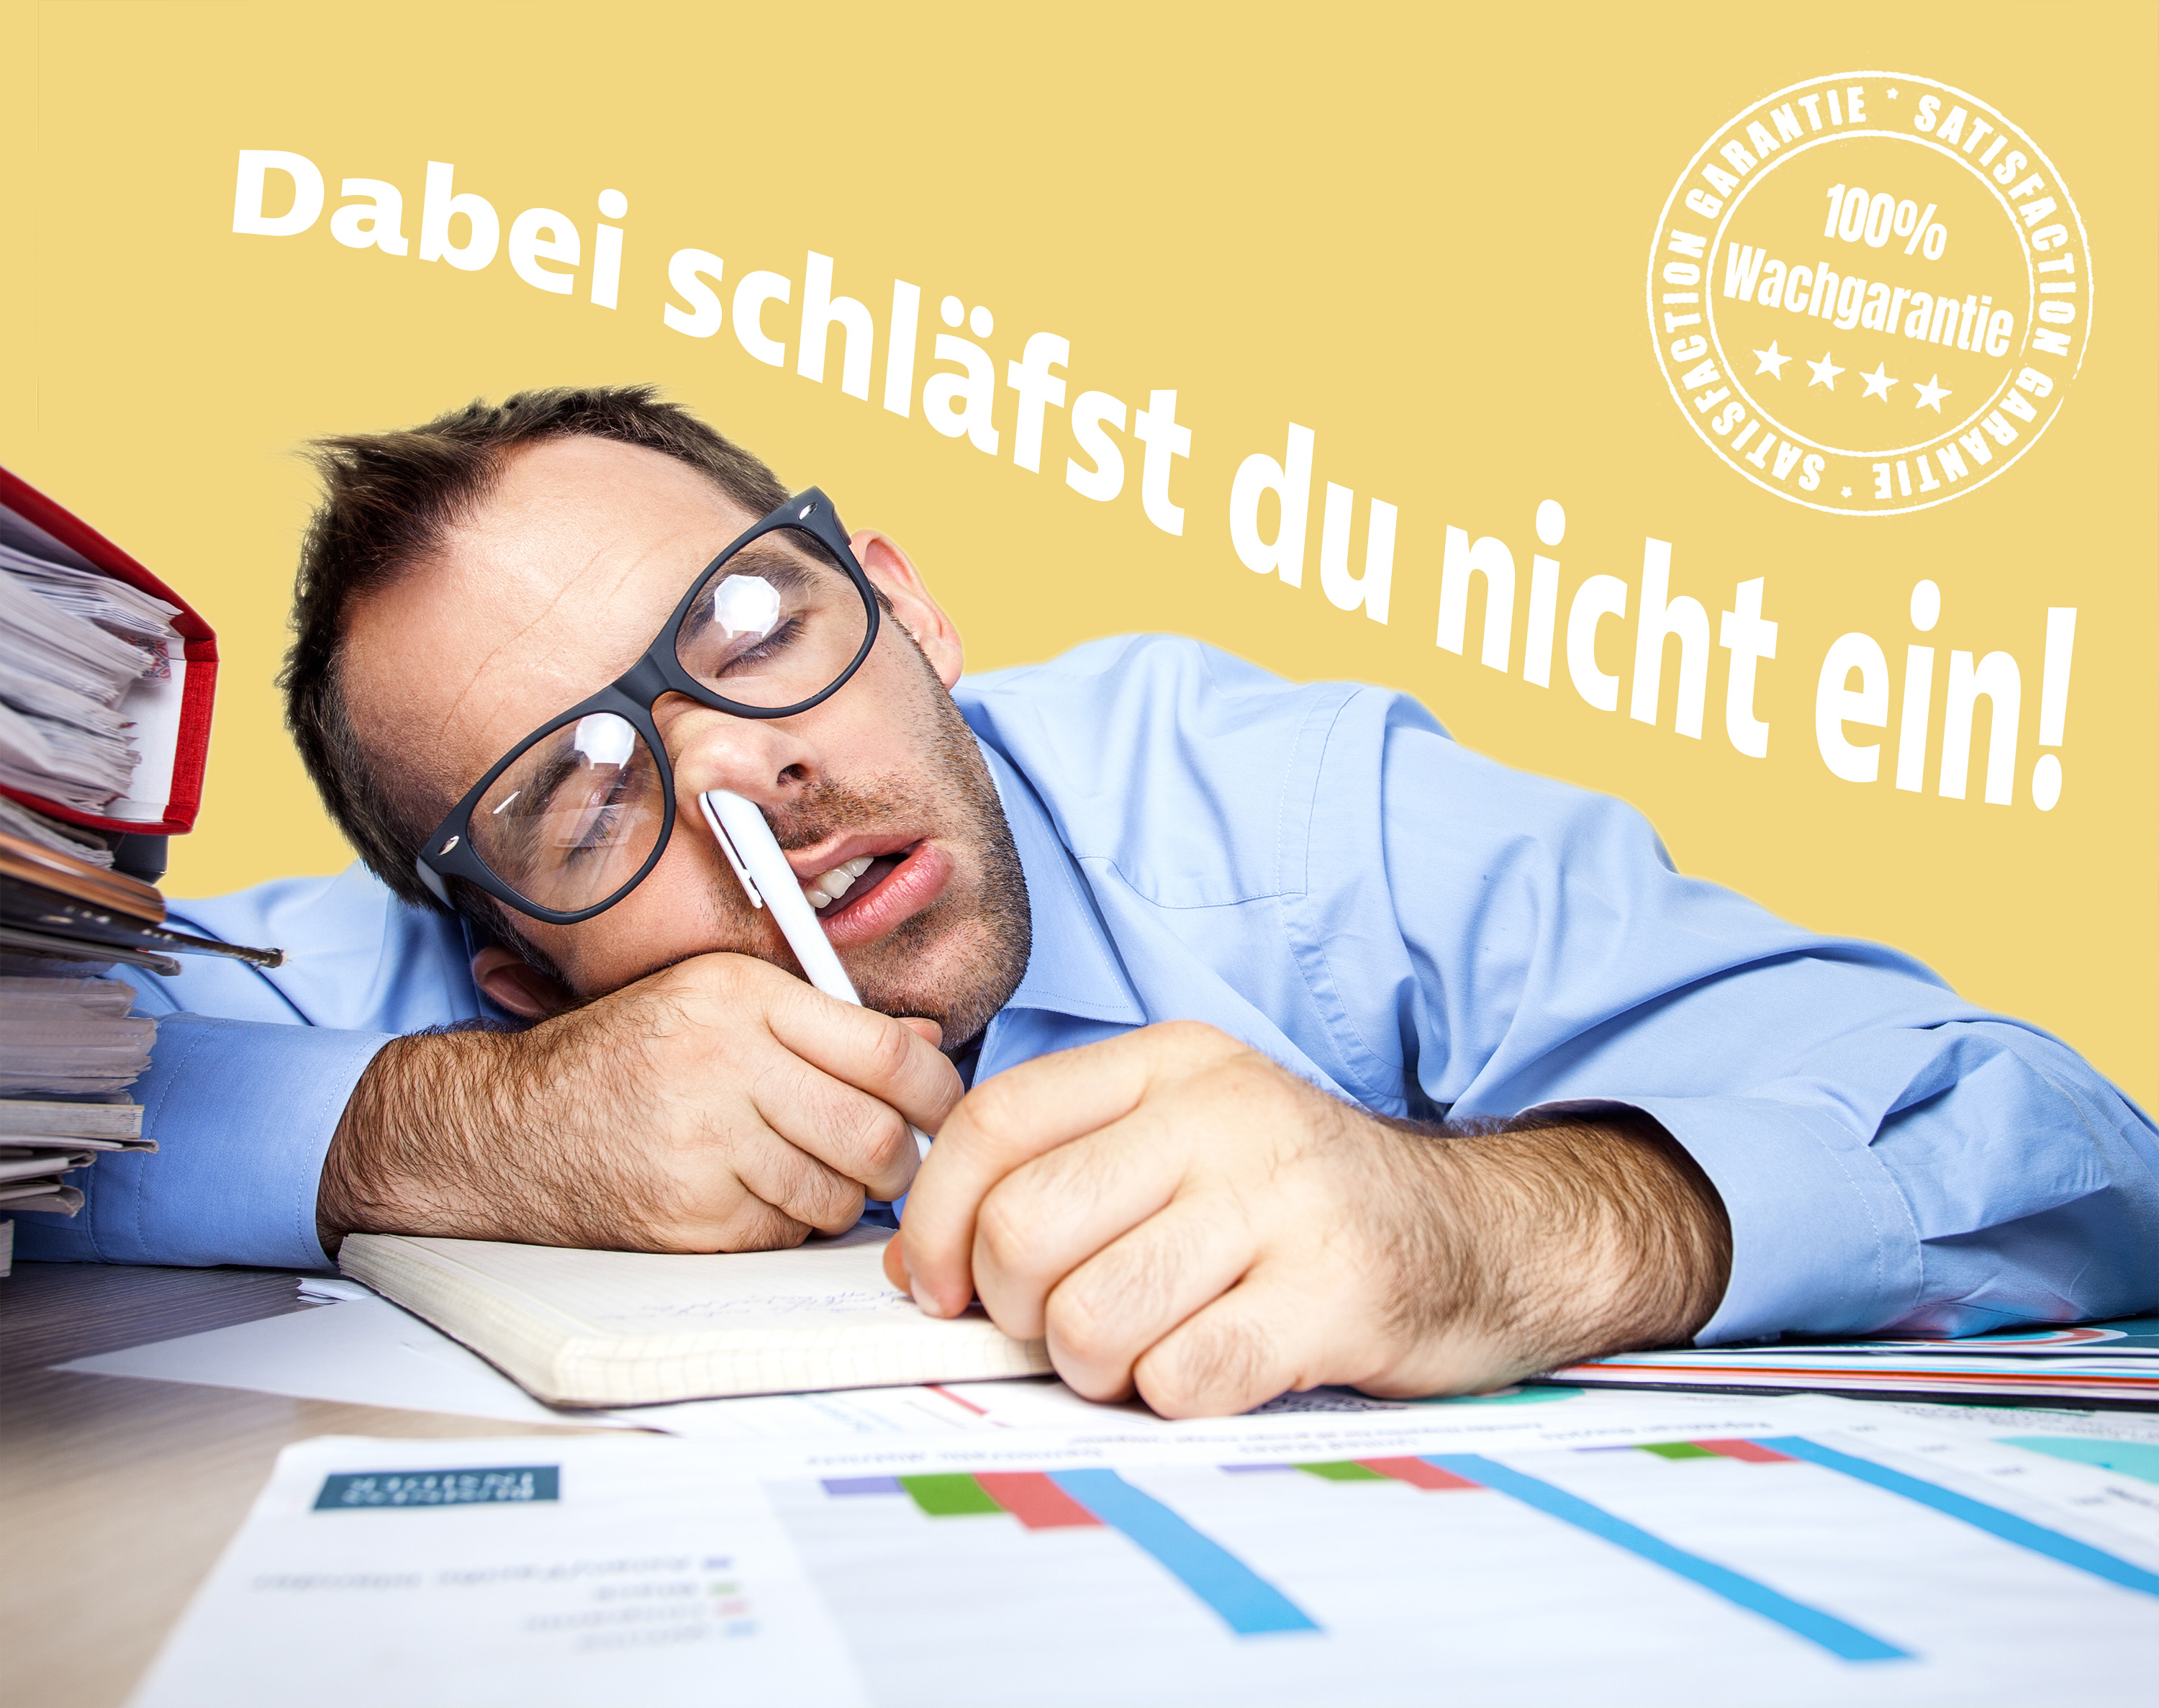 Ein Mann schläft auf einem Schreibtisch mit einem Kugelschreiber in der Nase. Über Ihn steht geschrieben: Dabei schläfst du nicht ein! - 100% Wachgarantie